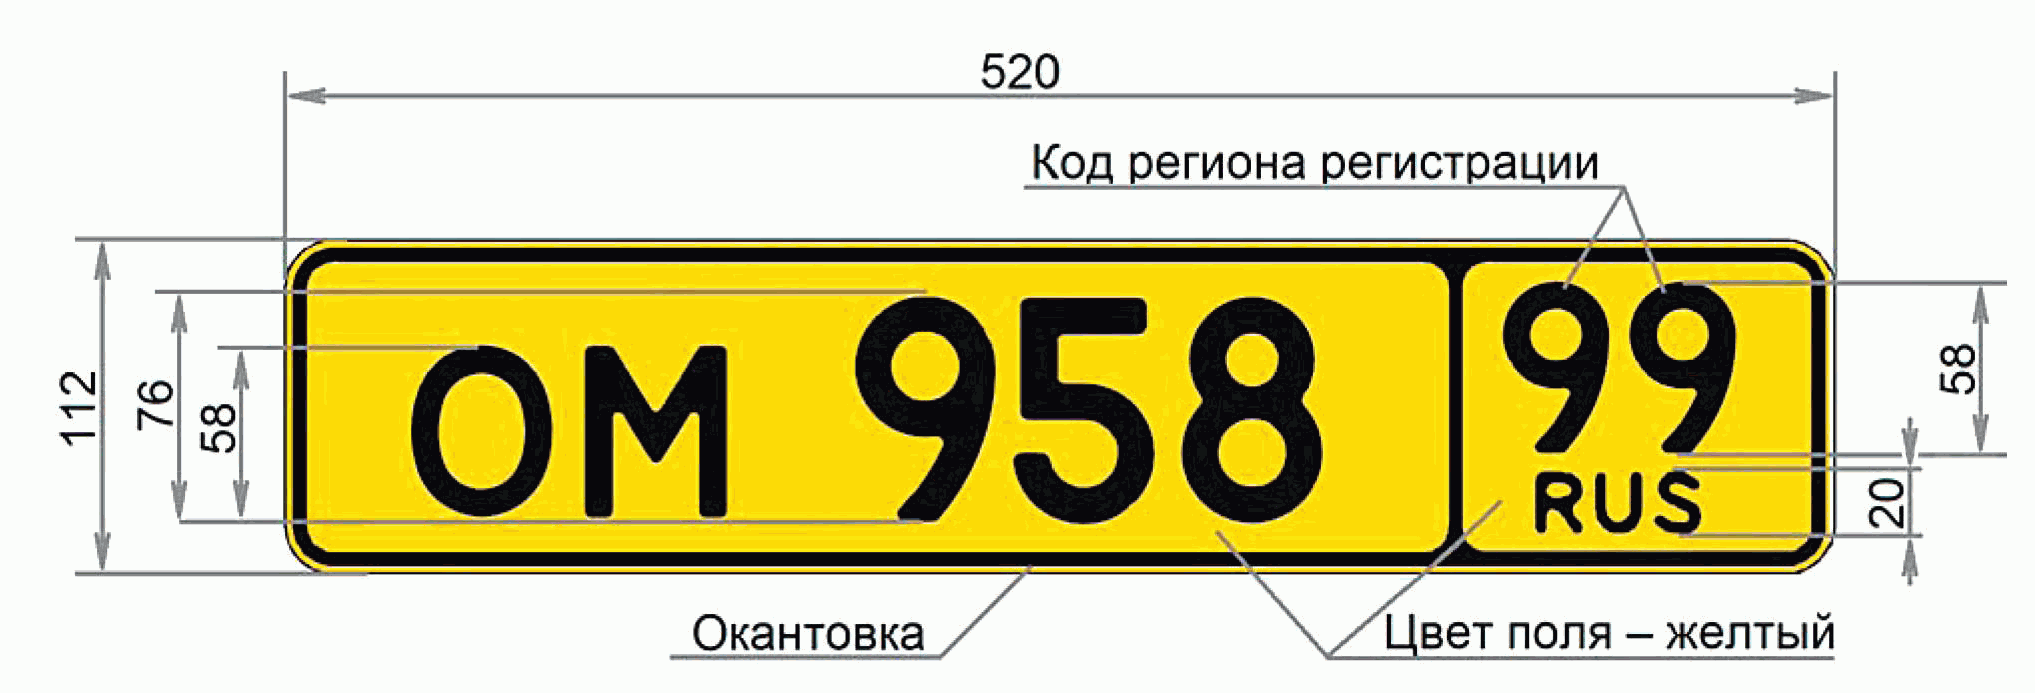 Желтый регион на номере. Тип 1б гос номера. Регистрационный номерной знак. Регистрационный знак транспортного средства. Размер номерного знака автомобиля.